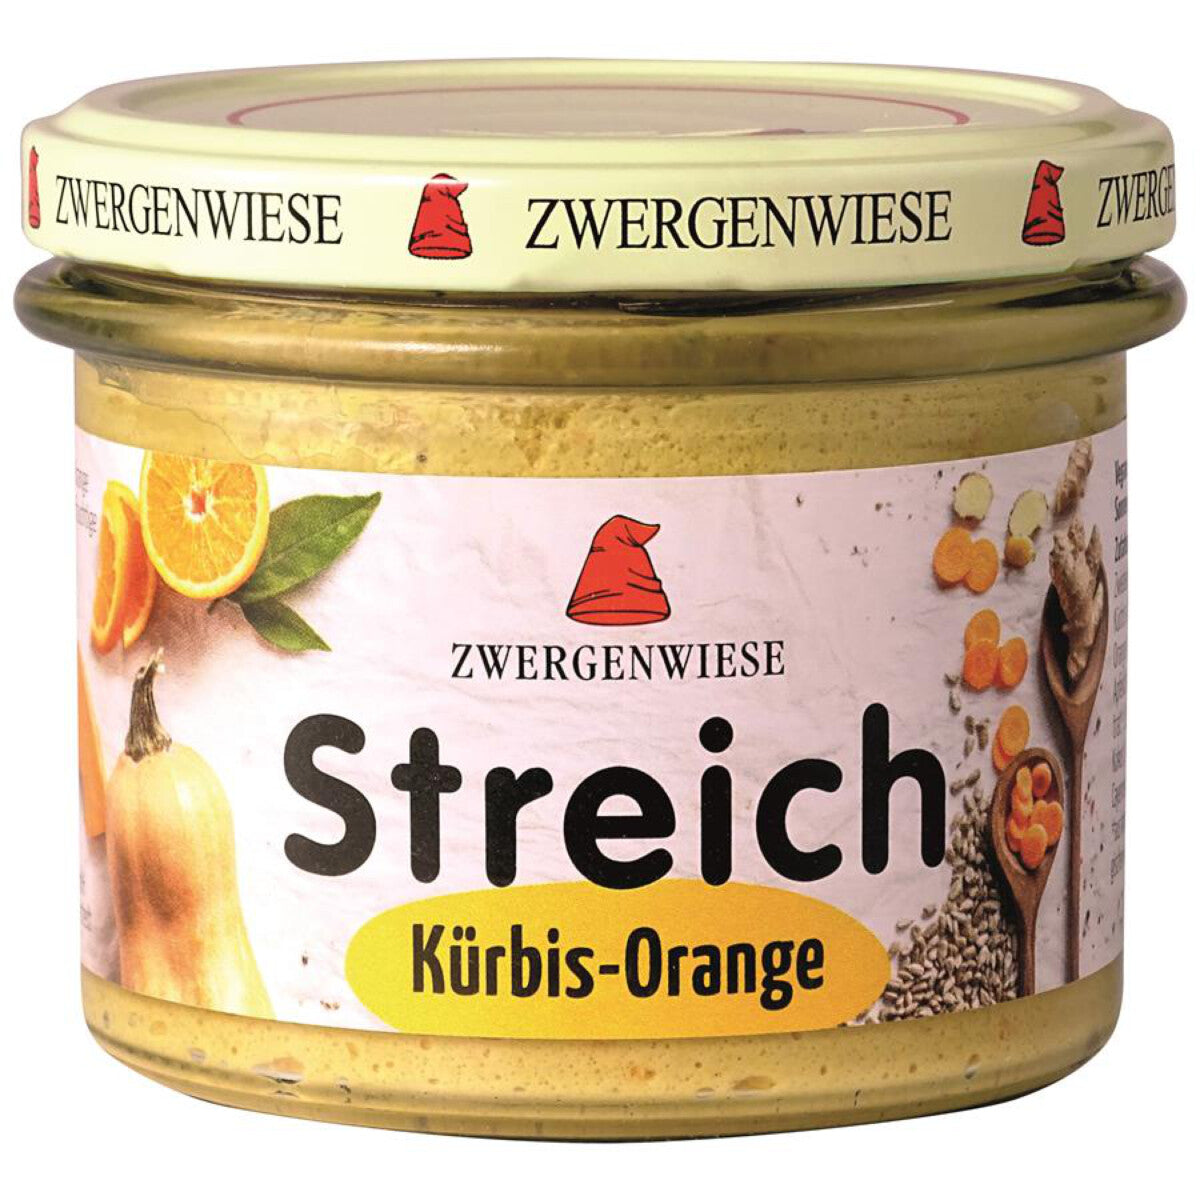 ZWERGENWIESE Kürbis-Orange Streich - 180 g